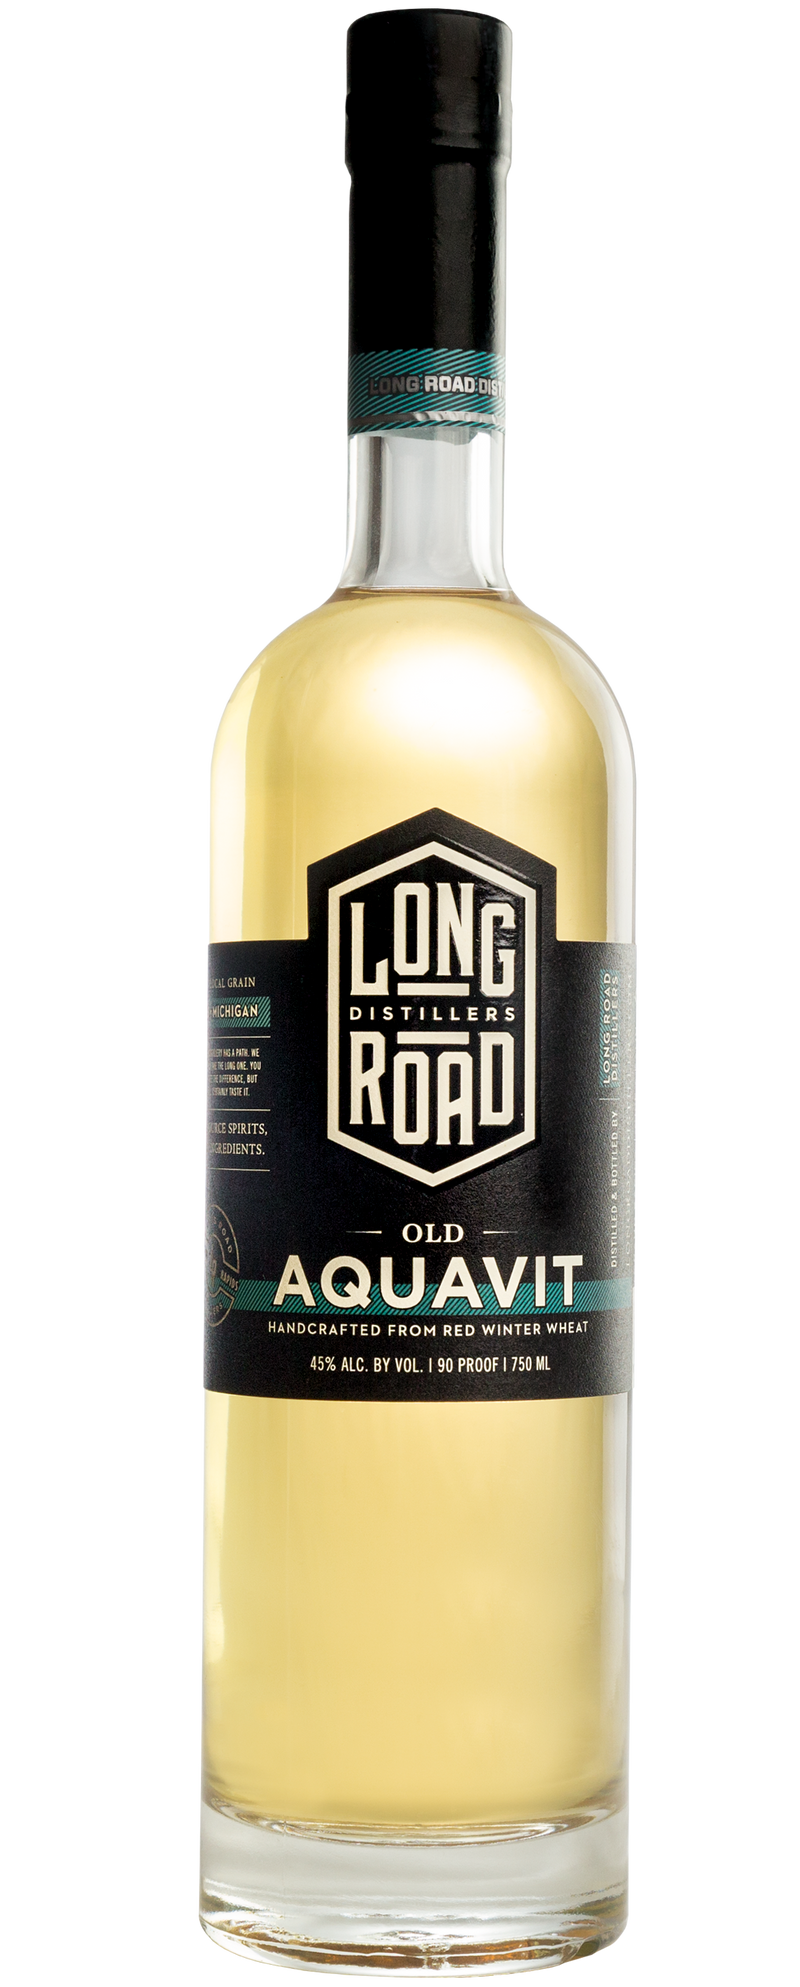 LONG ROAD OLD AQUAVIT Cordials & Liqueurs – American BeverageWarehouse